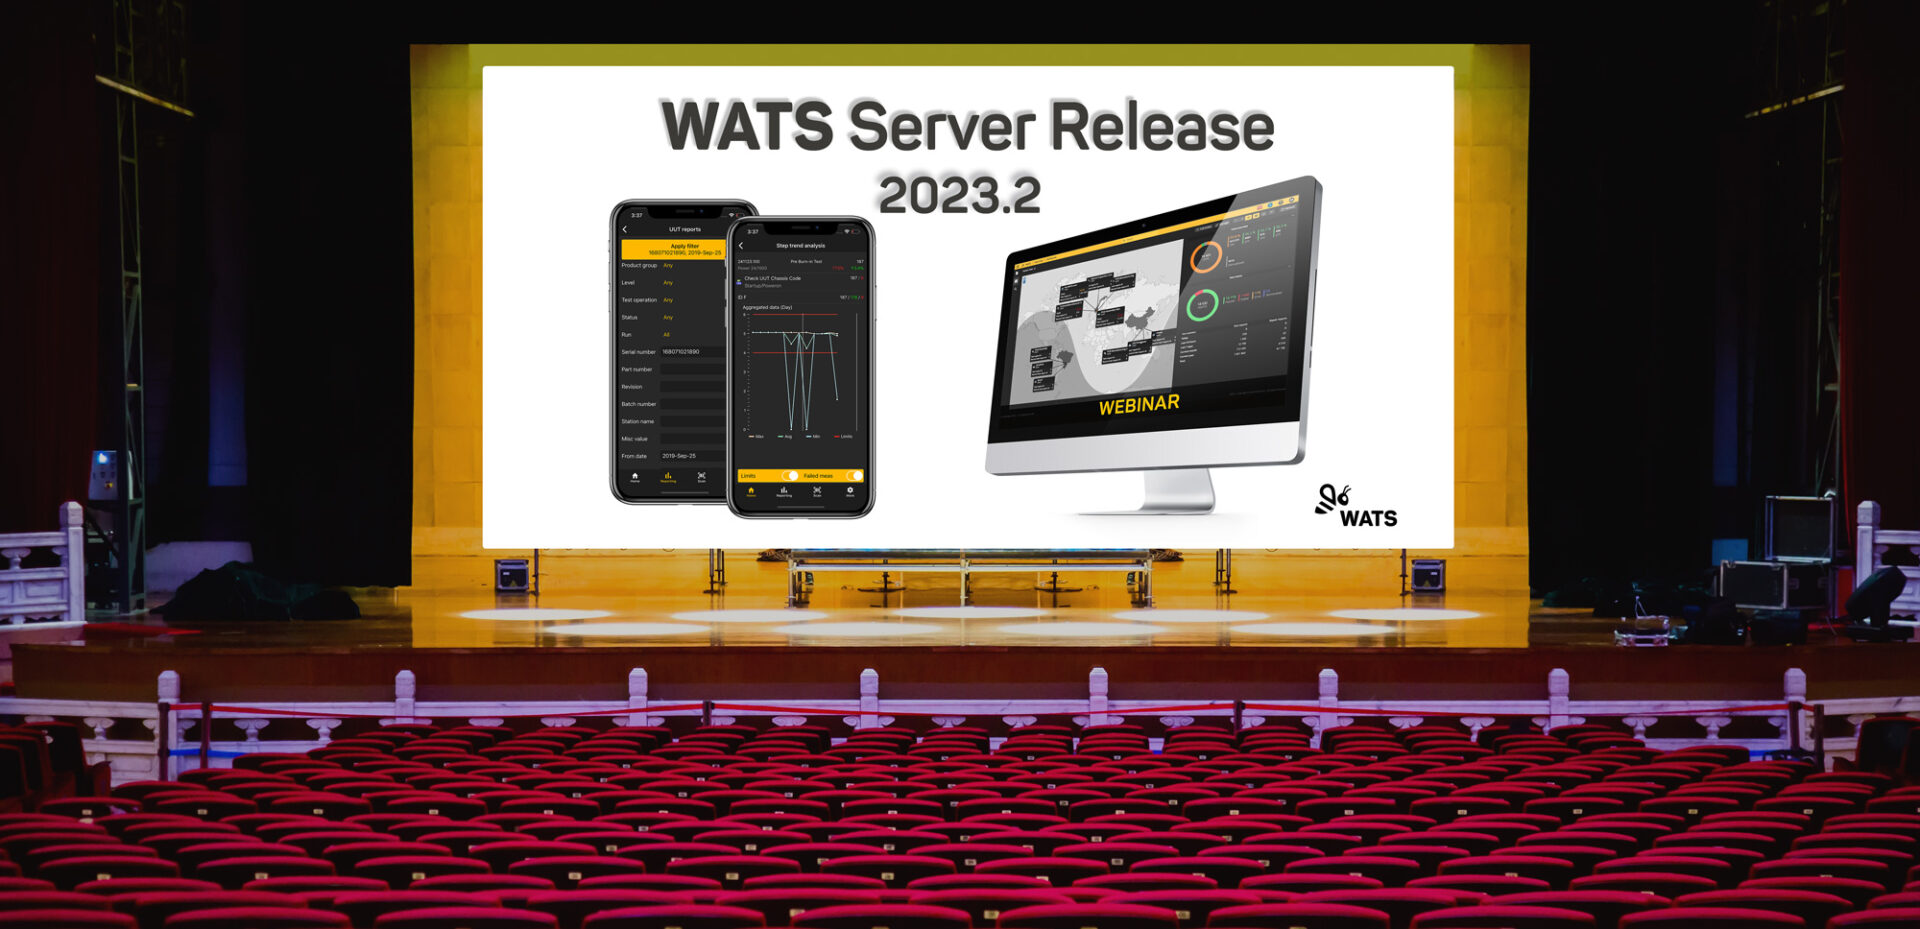 New WATS Server release 2023.2